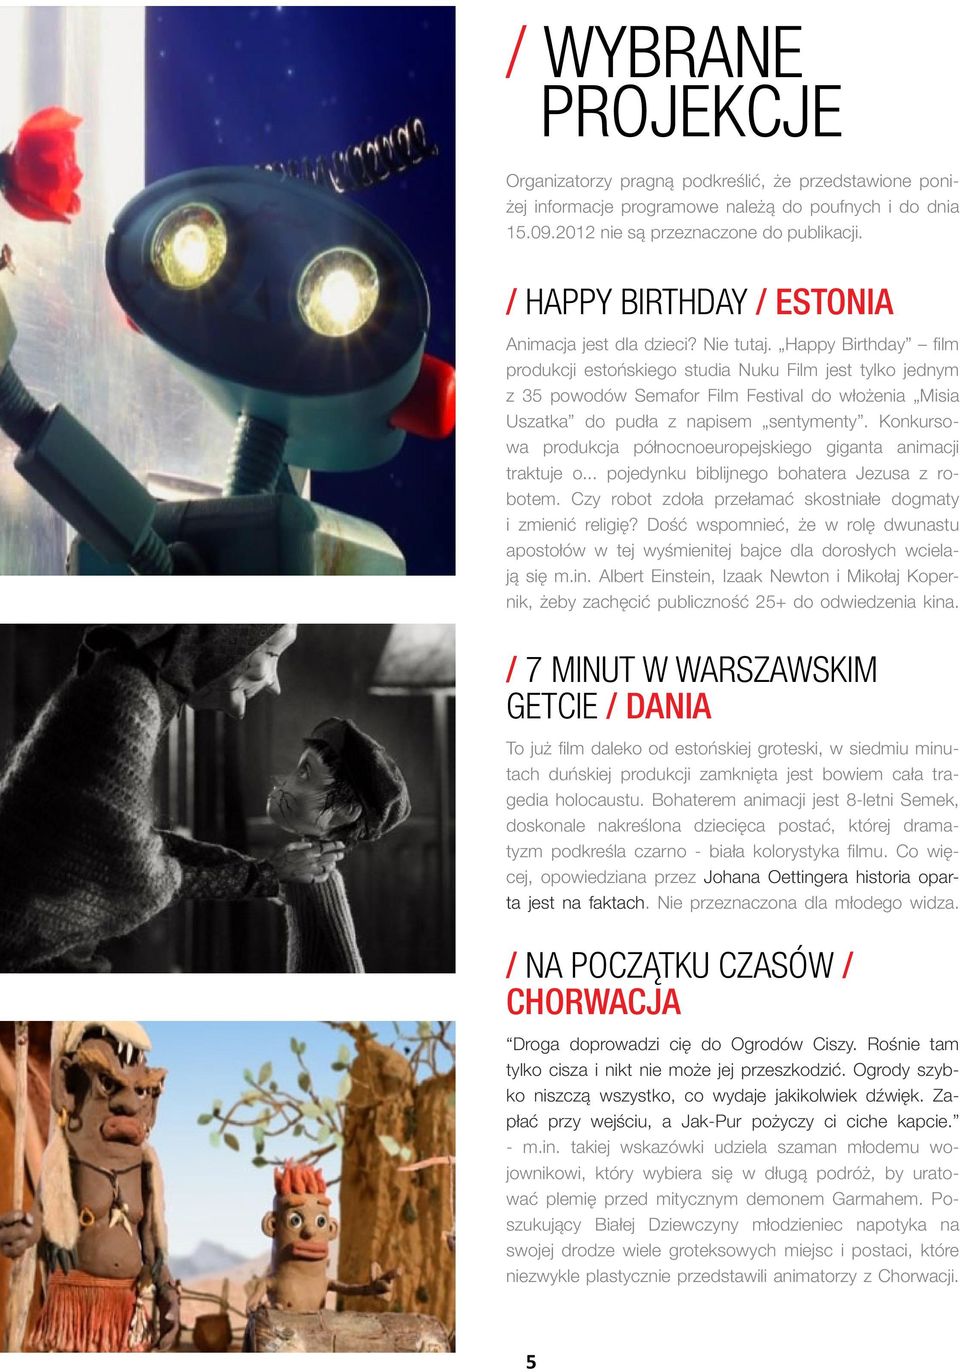 Happy Birthday film produkcji estońskiego studia Nuku Film jest tylko jednym z 35 powodów Semafor Film Festival do włożenia Misia Uszatka do pudła z napisem sentymenty.